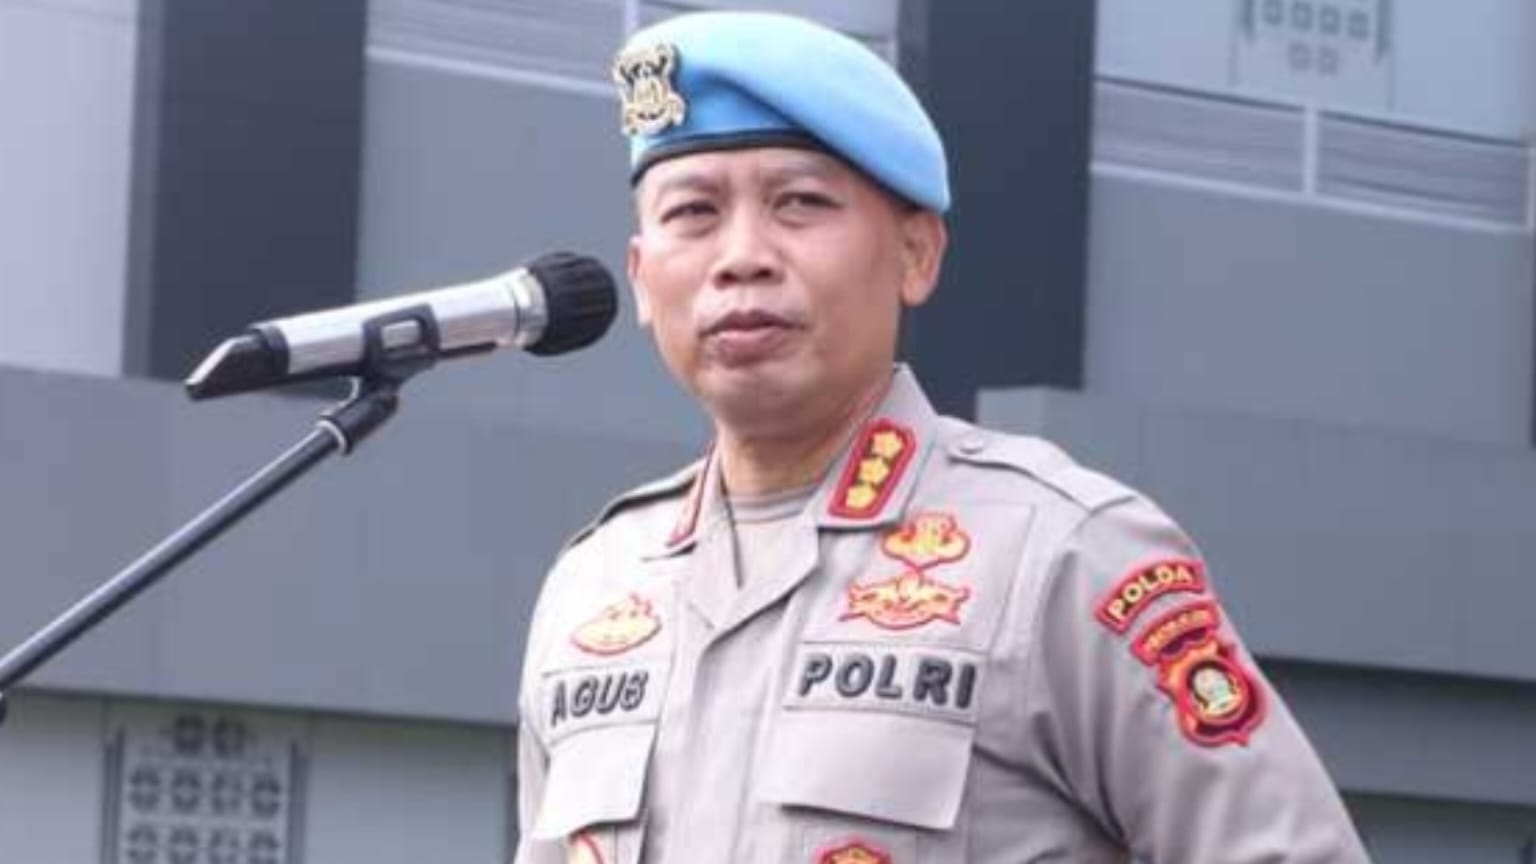 Aiptu Fn, Oknum Polisi Lubuk Linggau yang Tembak Debt Collector di Palembang Langgar Kode Etik, Ini Hukumannya